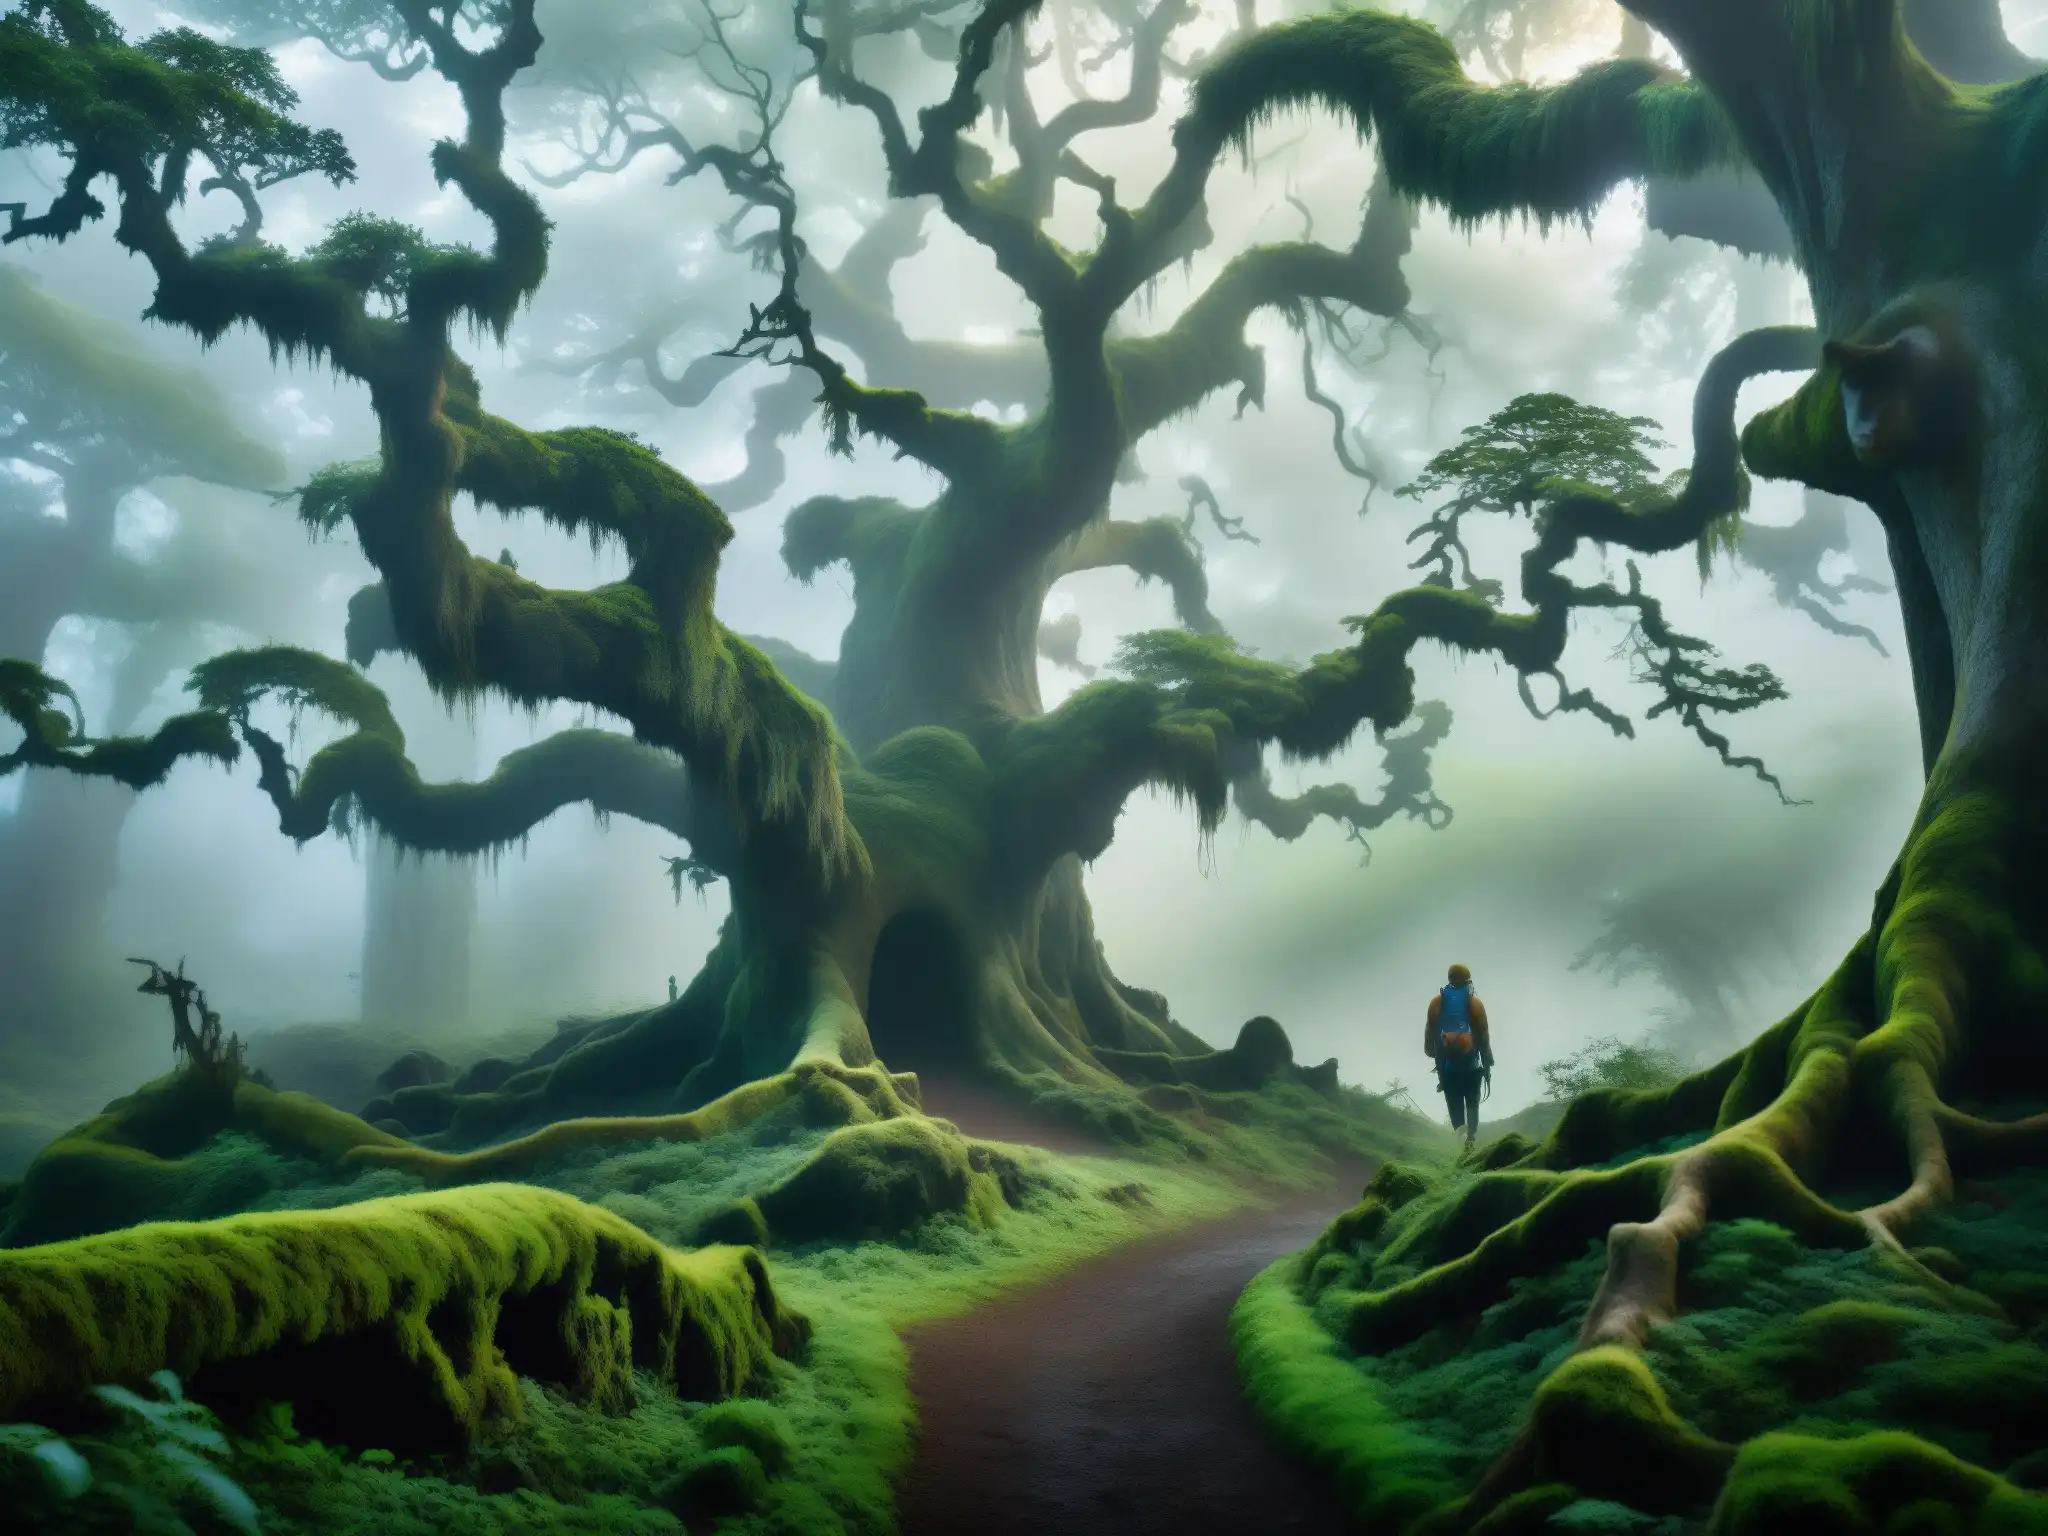 Sendero neblinoso en un bosque misterioso con árboles antiguos y una figura misteriosa